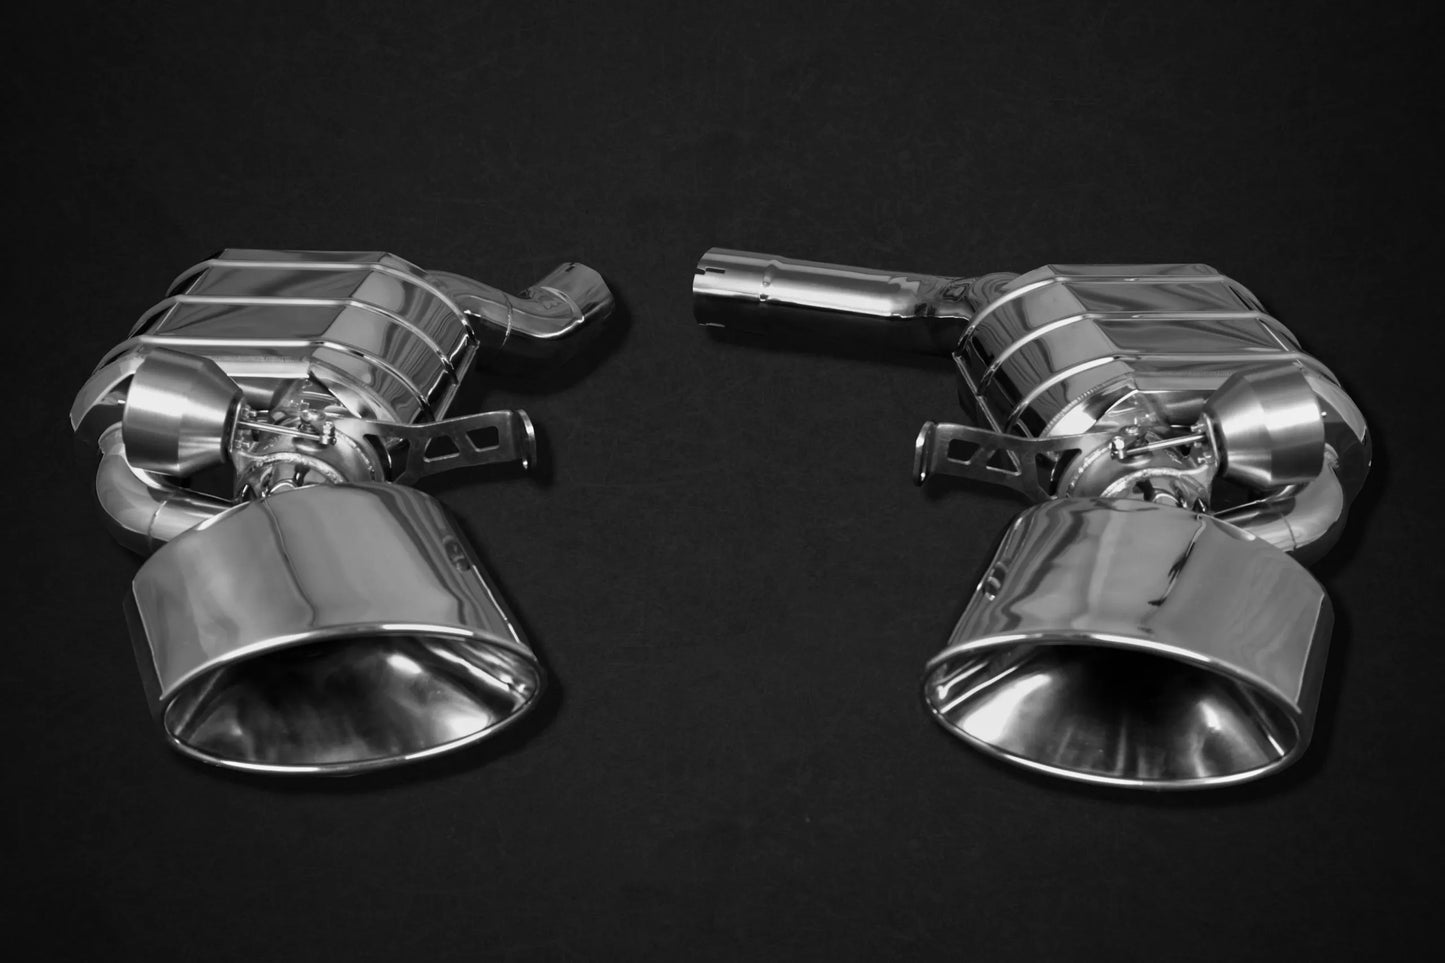 Capristo Endschalldämpfer mit Abgasklappen für den Audi RS 6 C8 und Audi RS 7